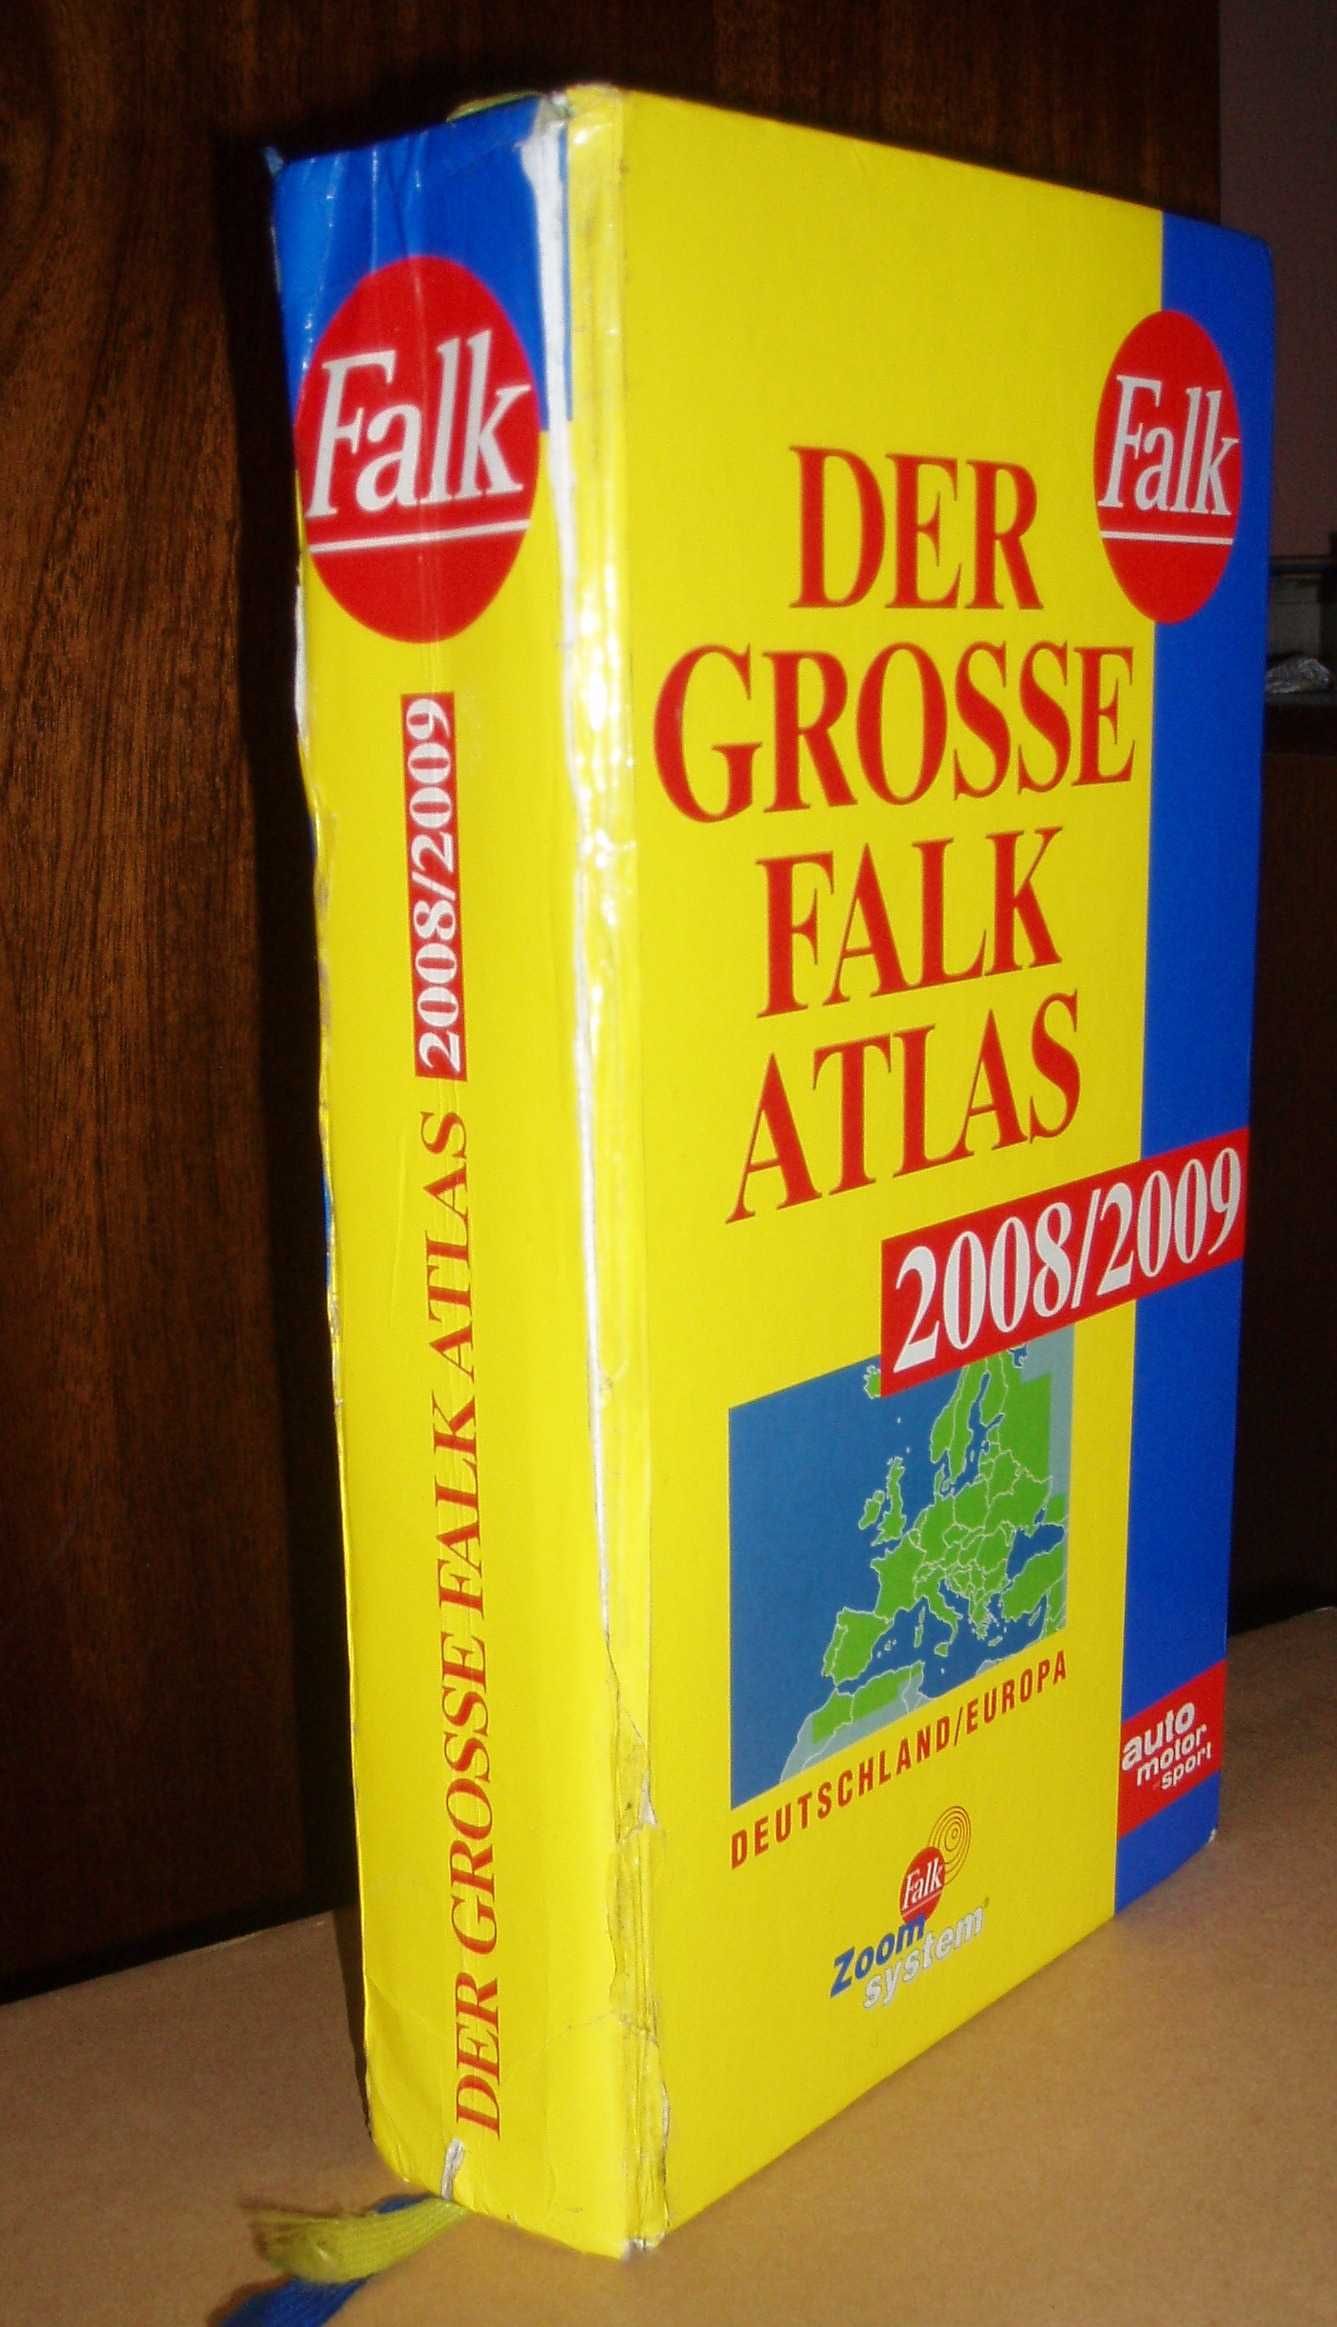 Пътен атлас Германия и Европа. 2008/2009. Фирма Фалк.